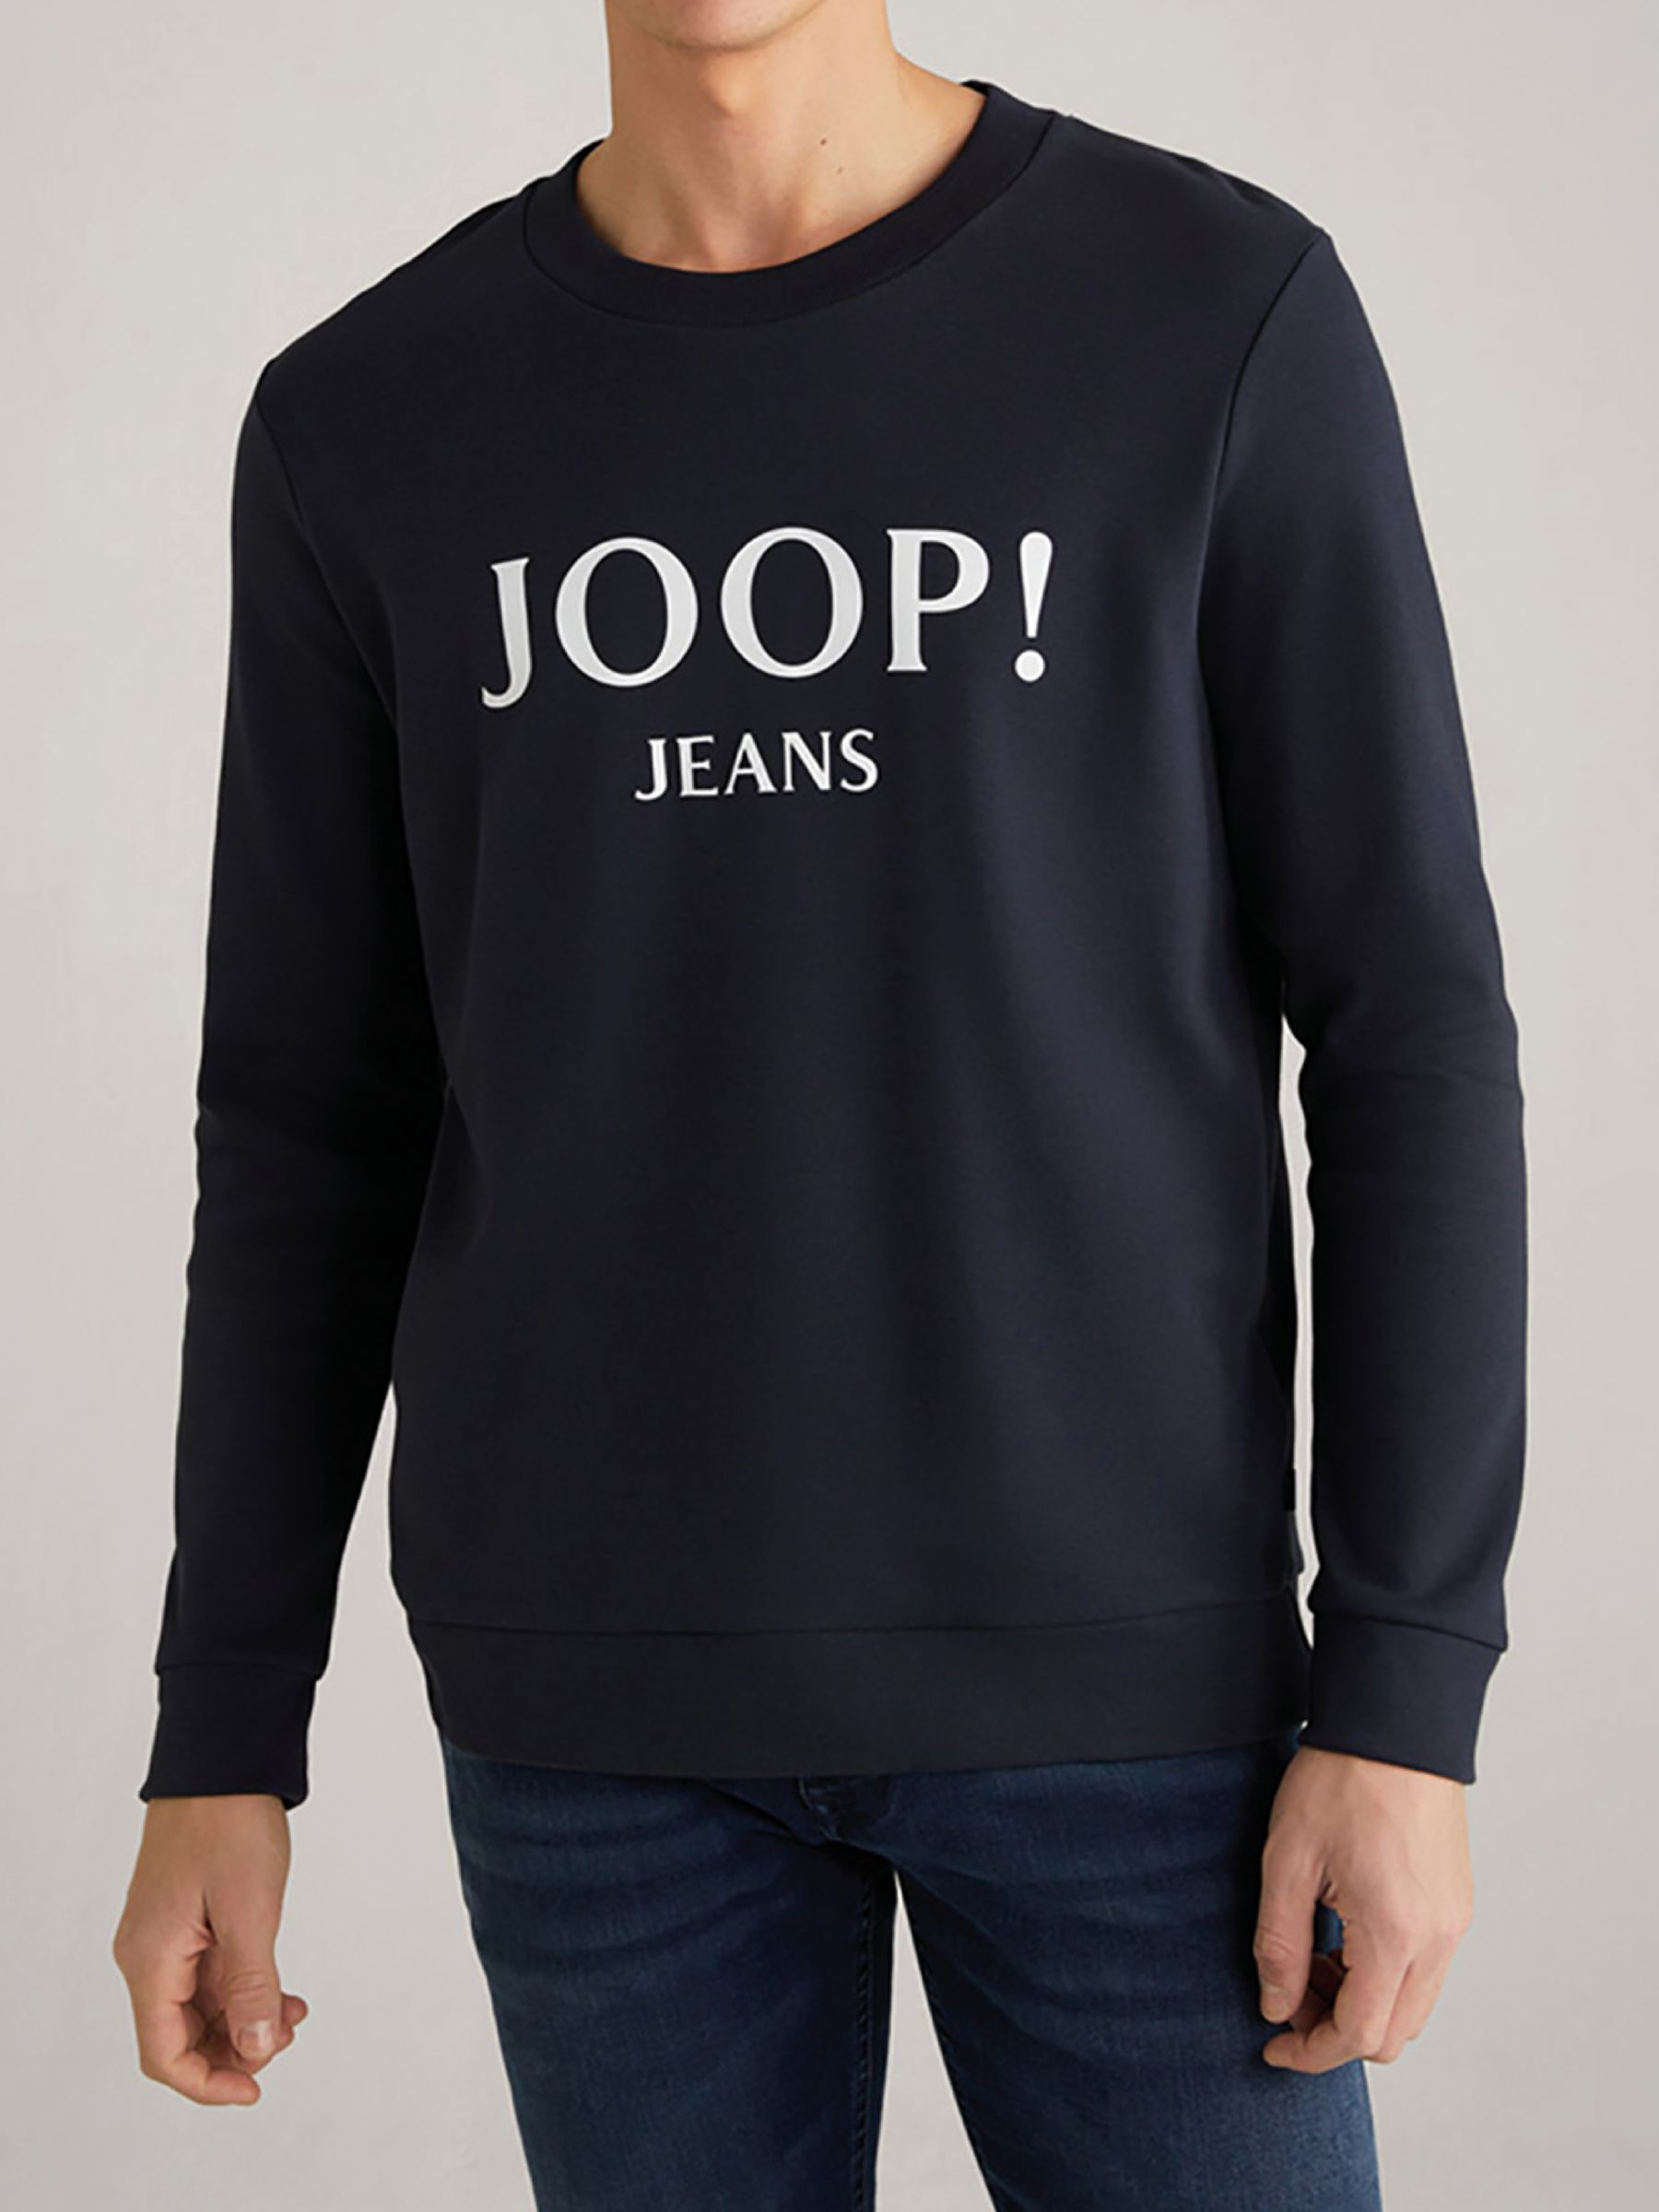 - Jeans blue メンズ- Sweatshirt JOOP dark